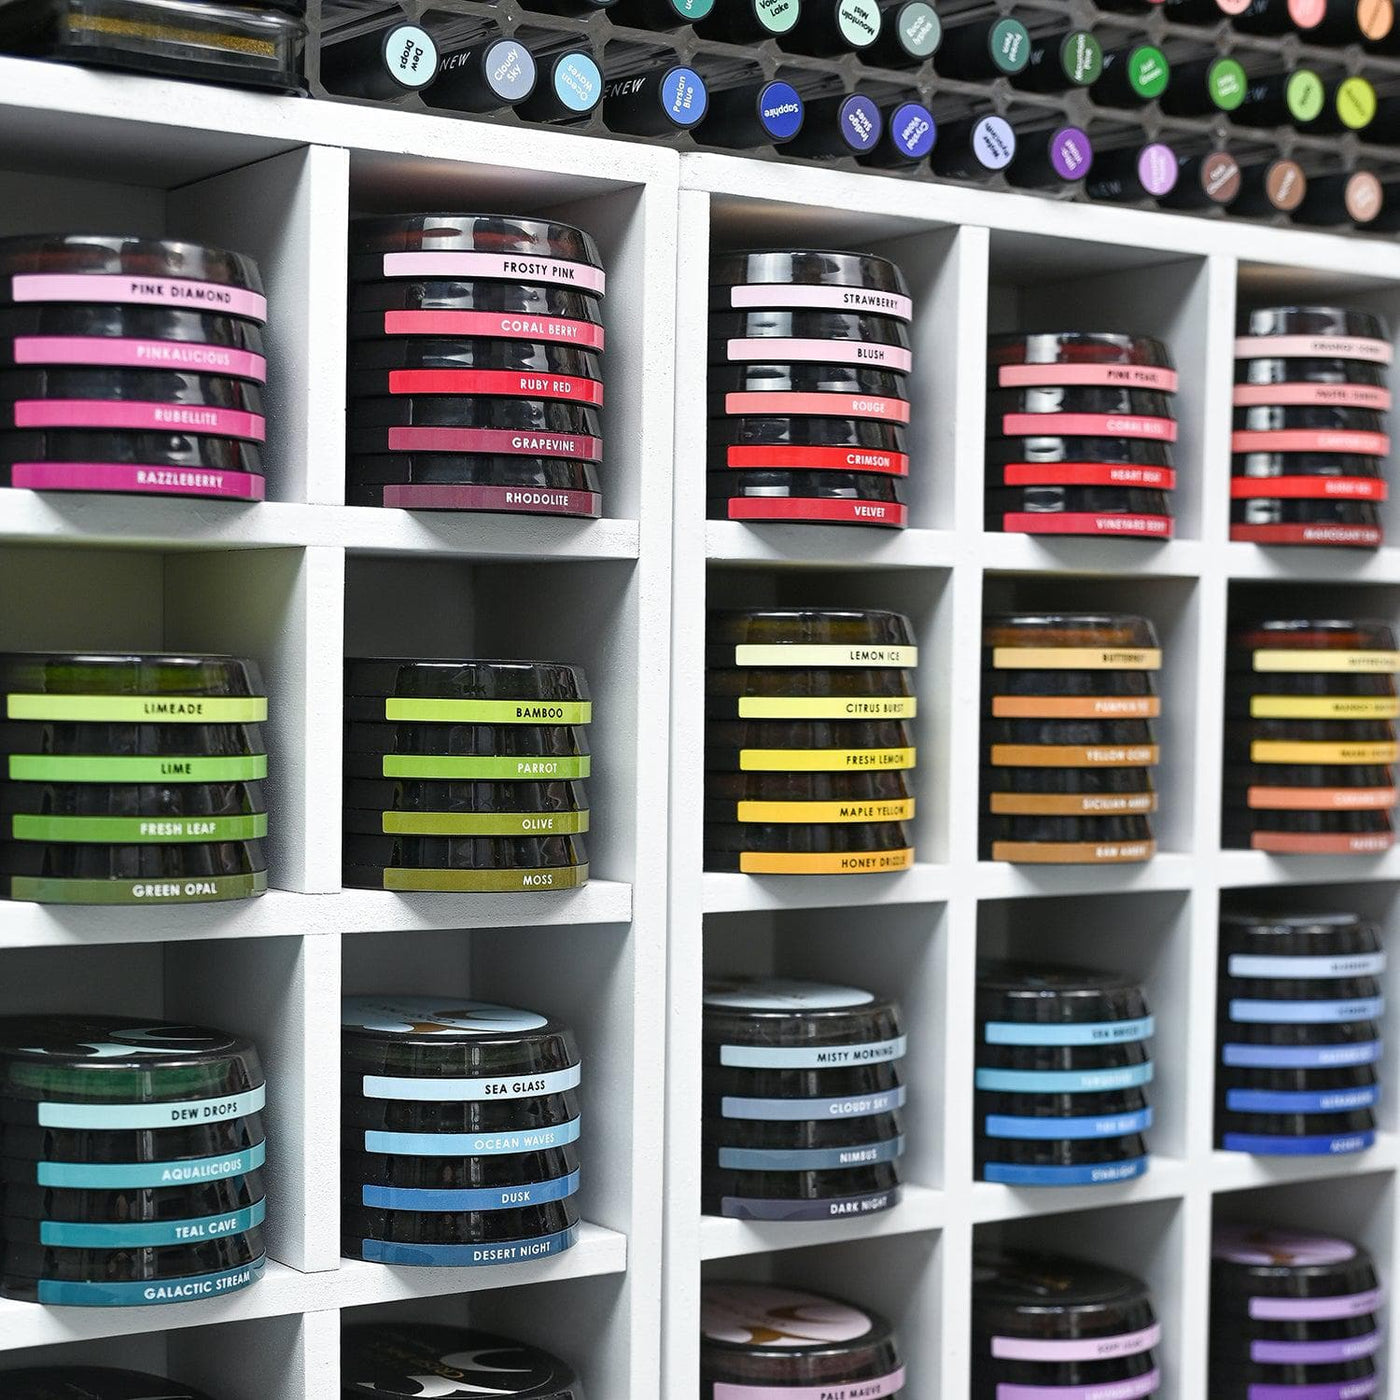 Misil Craft Decals Oval Ink Side Label Set - All Crisp Dye Ink Colors (3 Sheets)